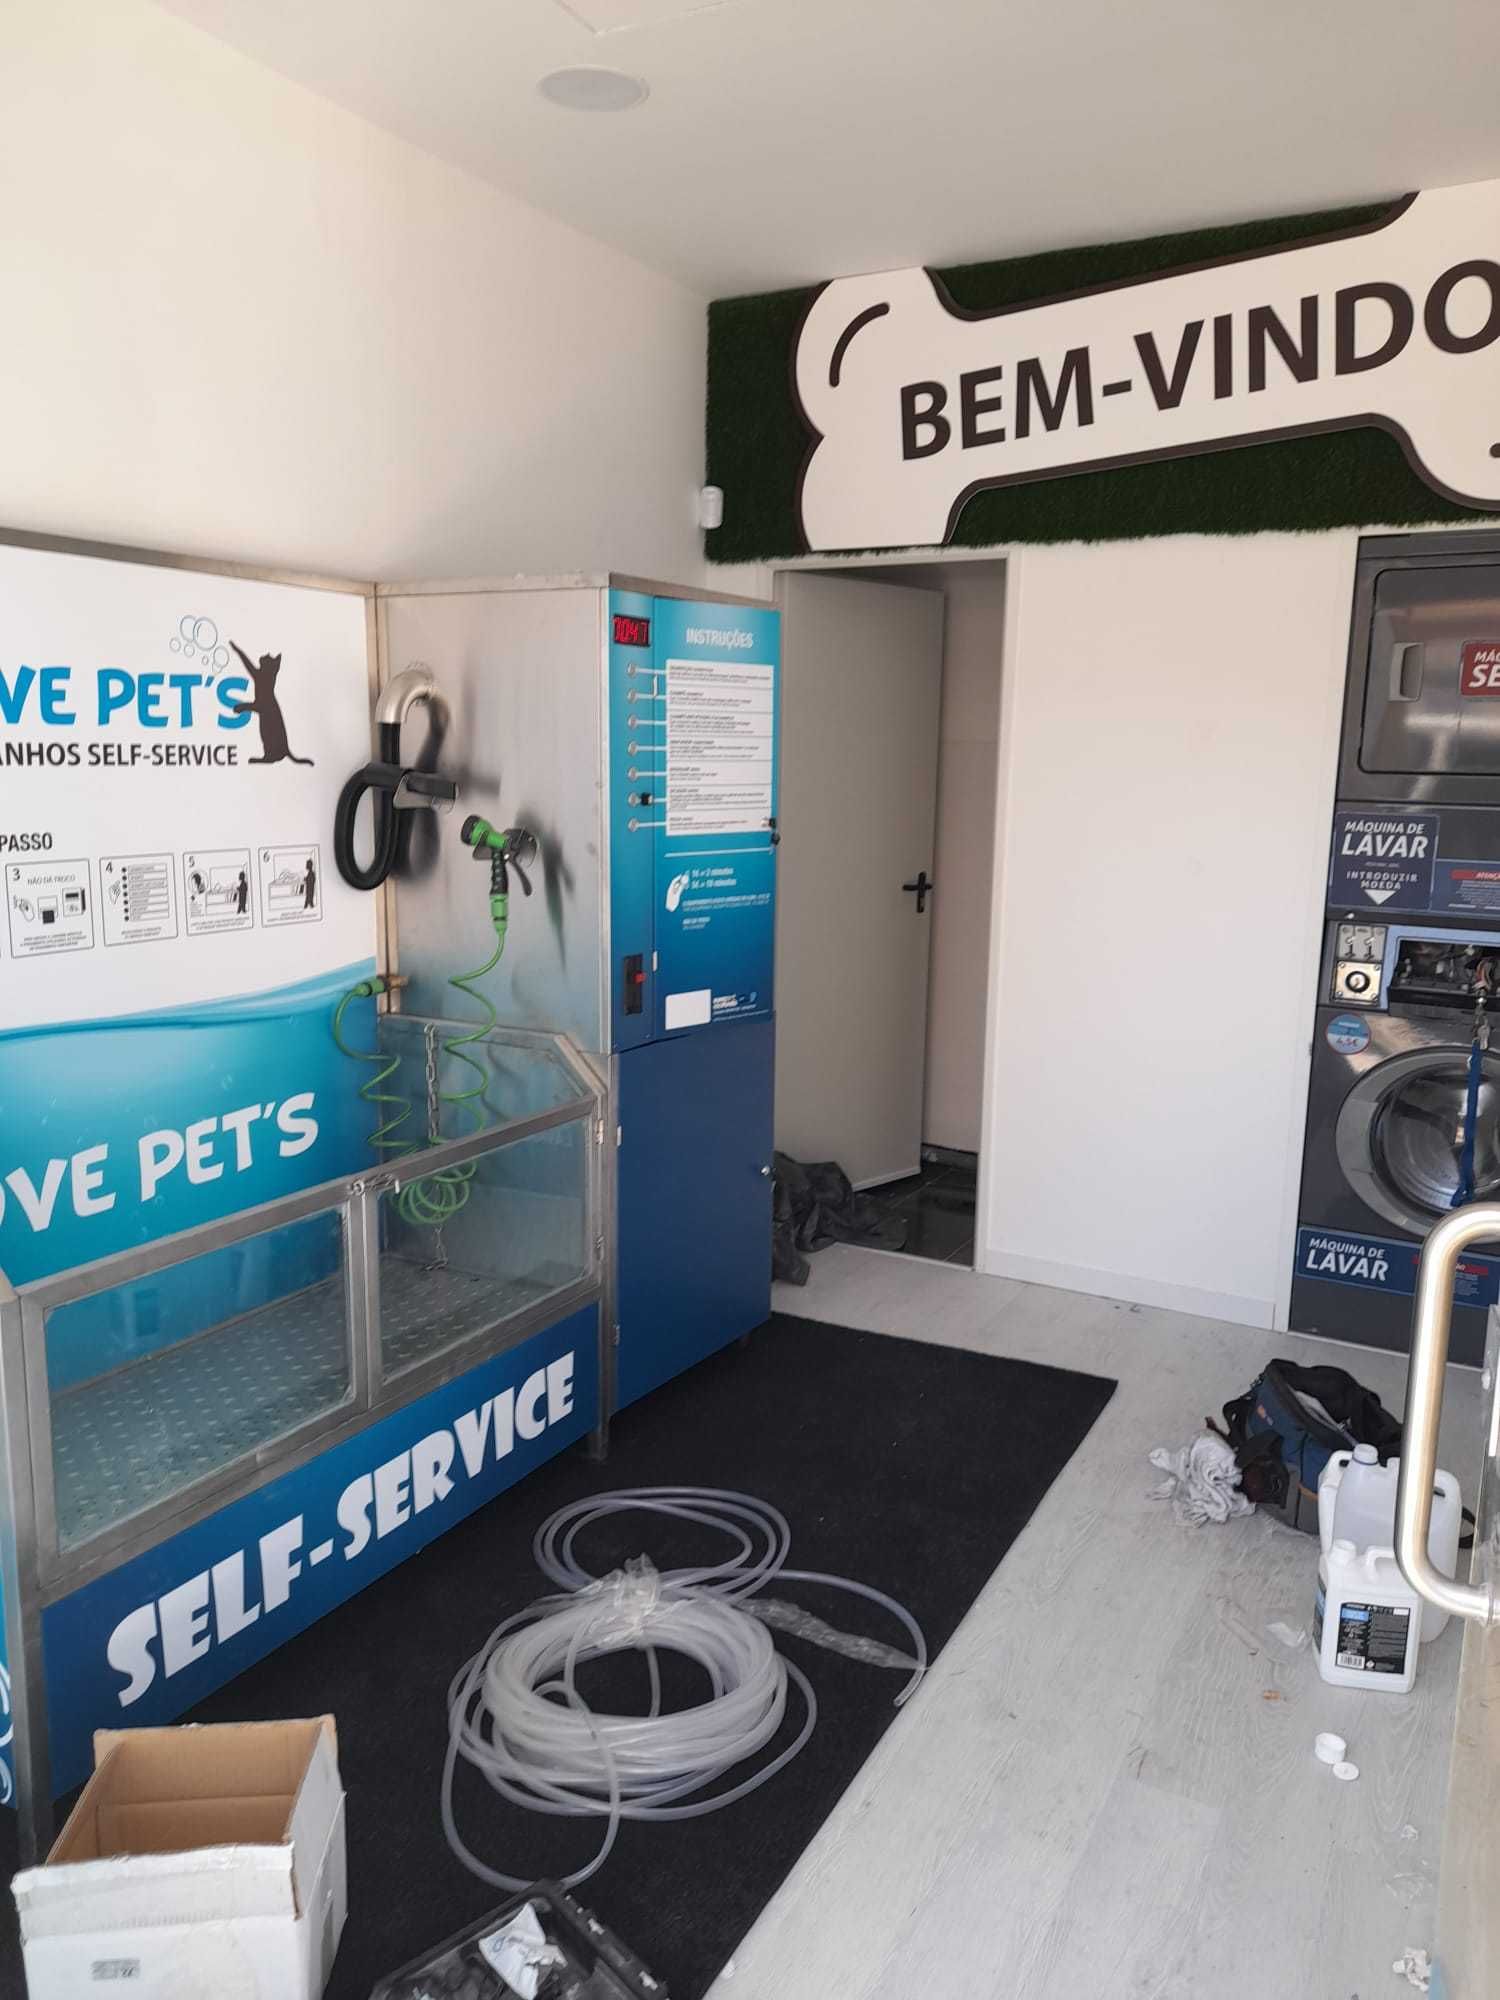 Conceito de negócio em expansão em Portugal, dog-wash self-service